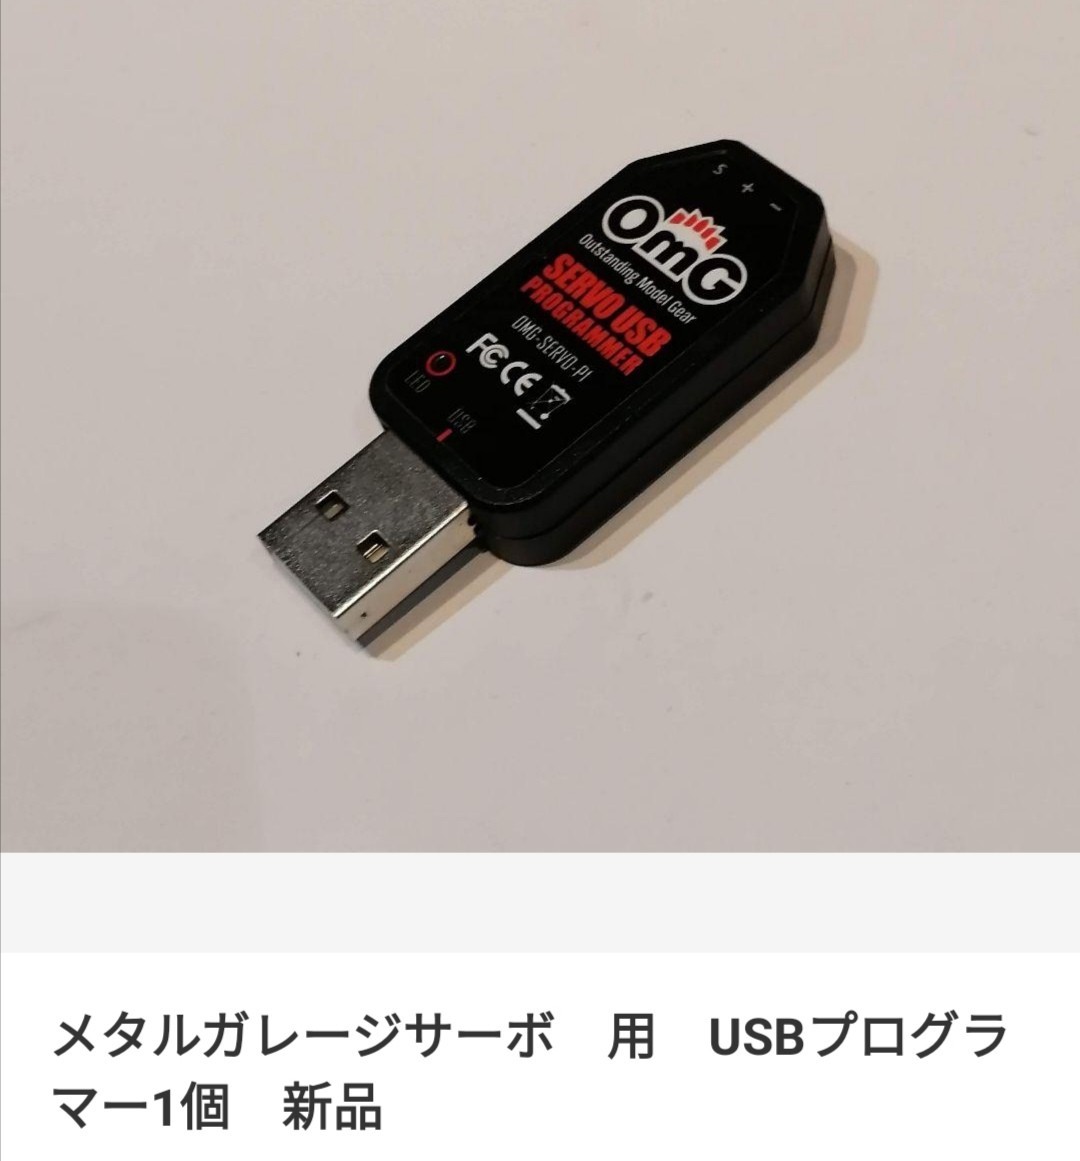 USB プログラマー サーボ メタル ガレージ